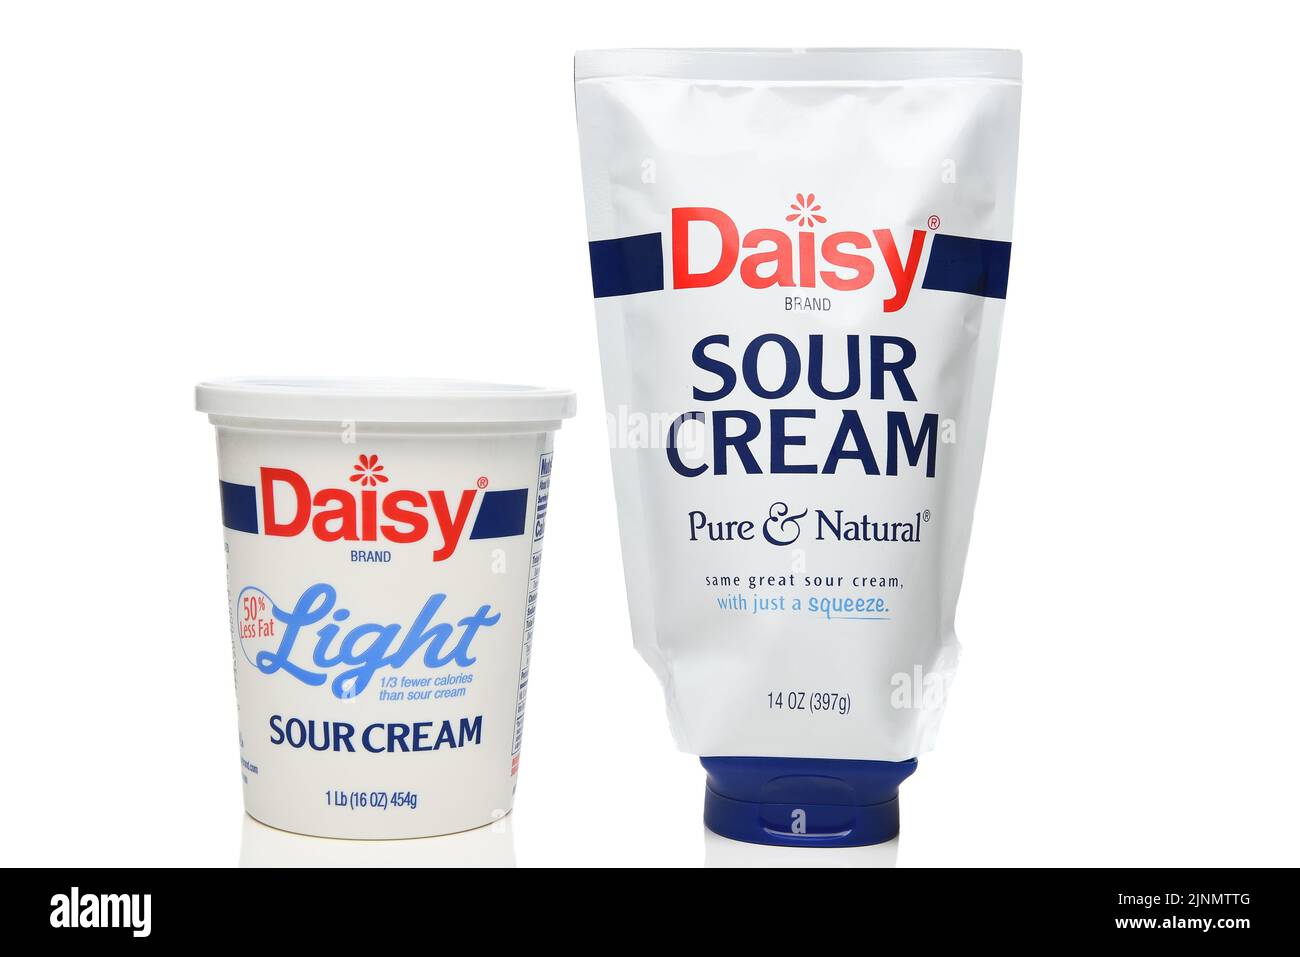 IRVINE, KALIFORNIEN - 12. AUG 2022: Eine Packung Daisy Light Sour Cream und eine quietschbare Packung Daisy Brand Regular Sour Cream. Stockfoto